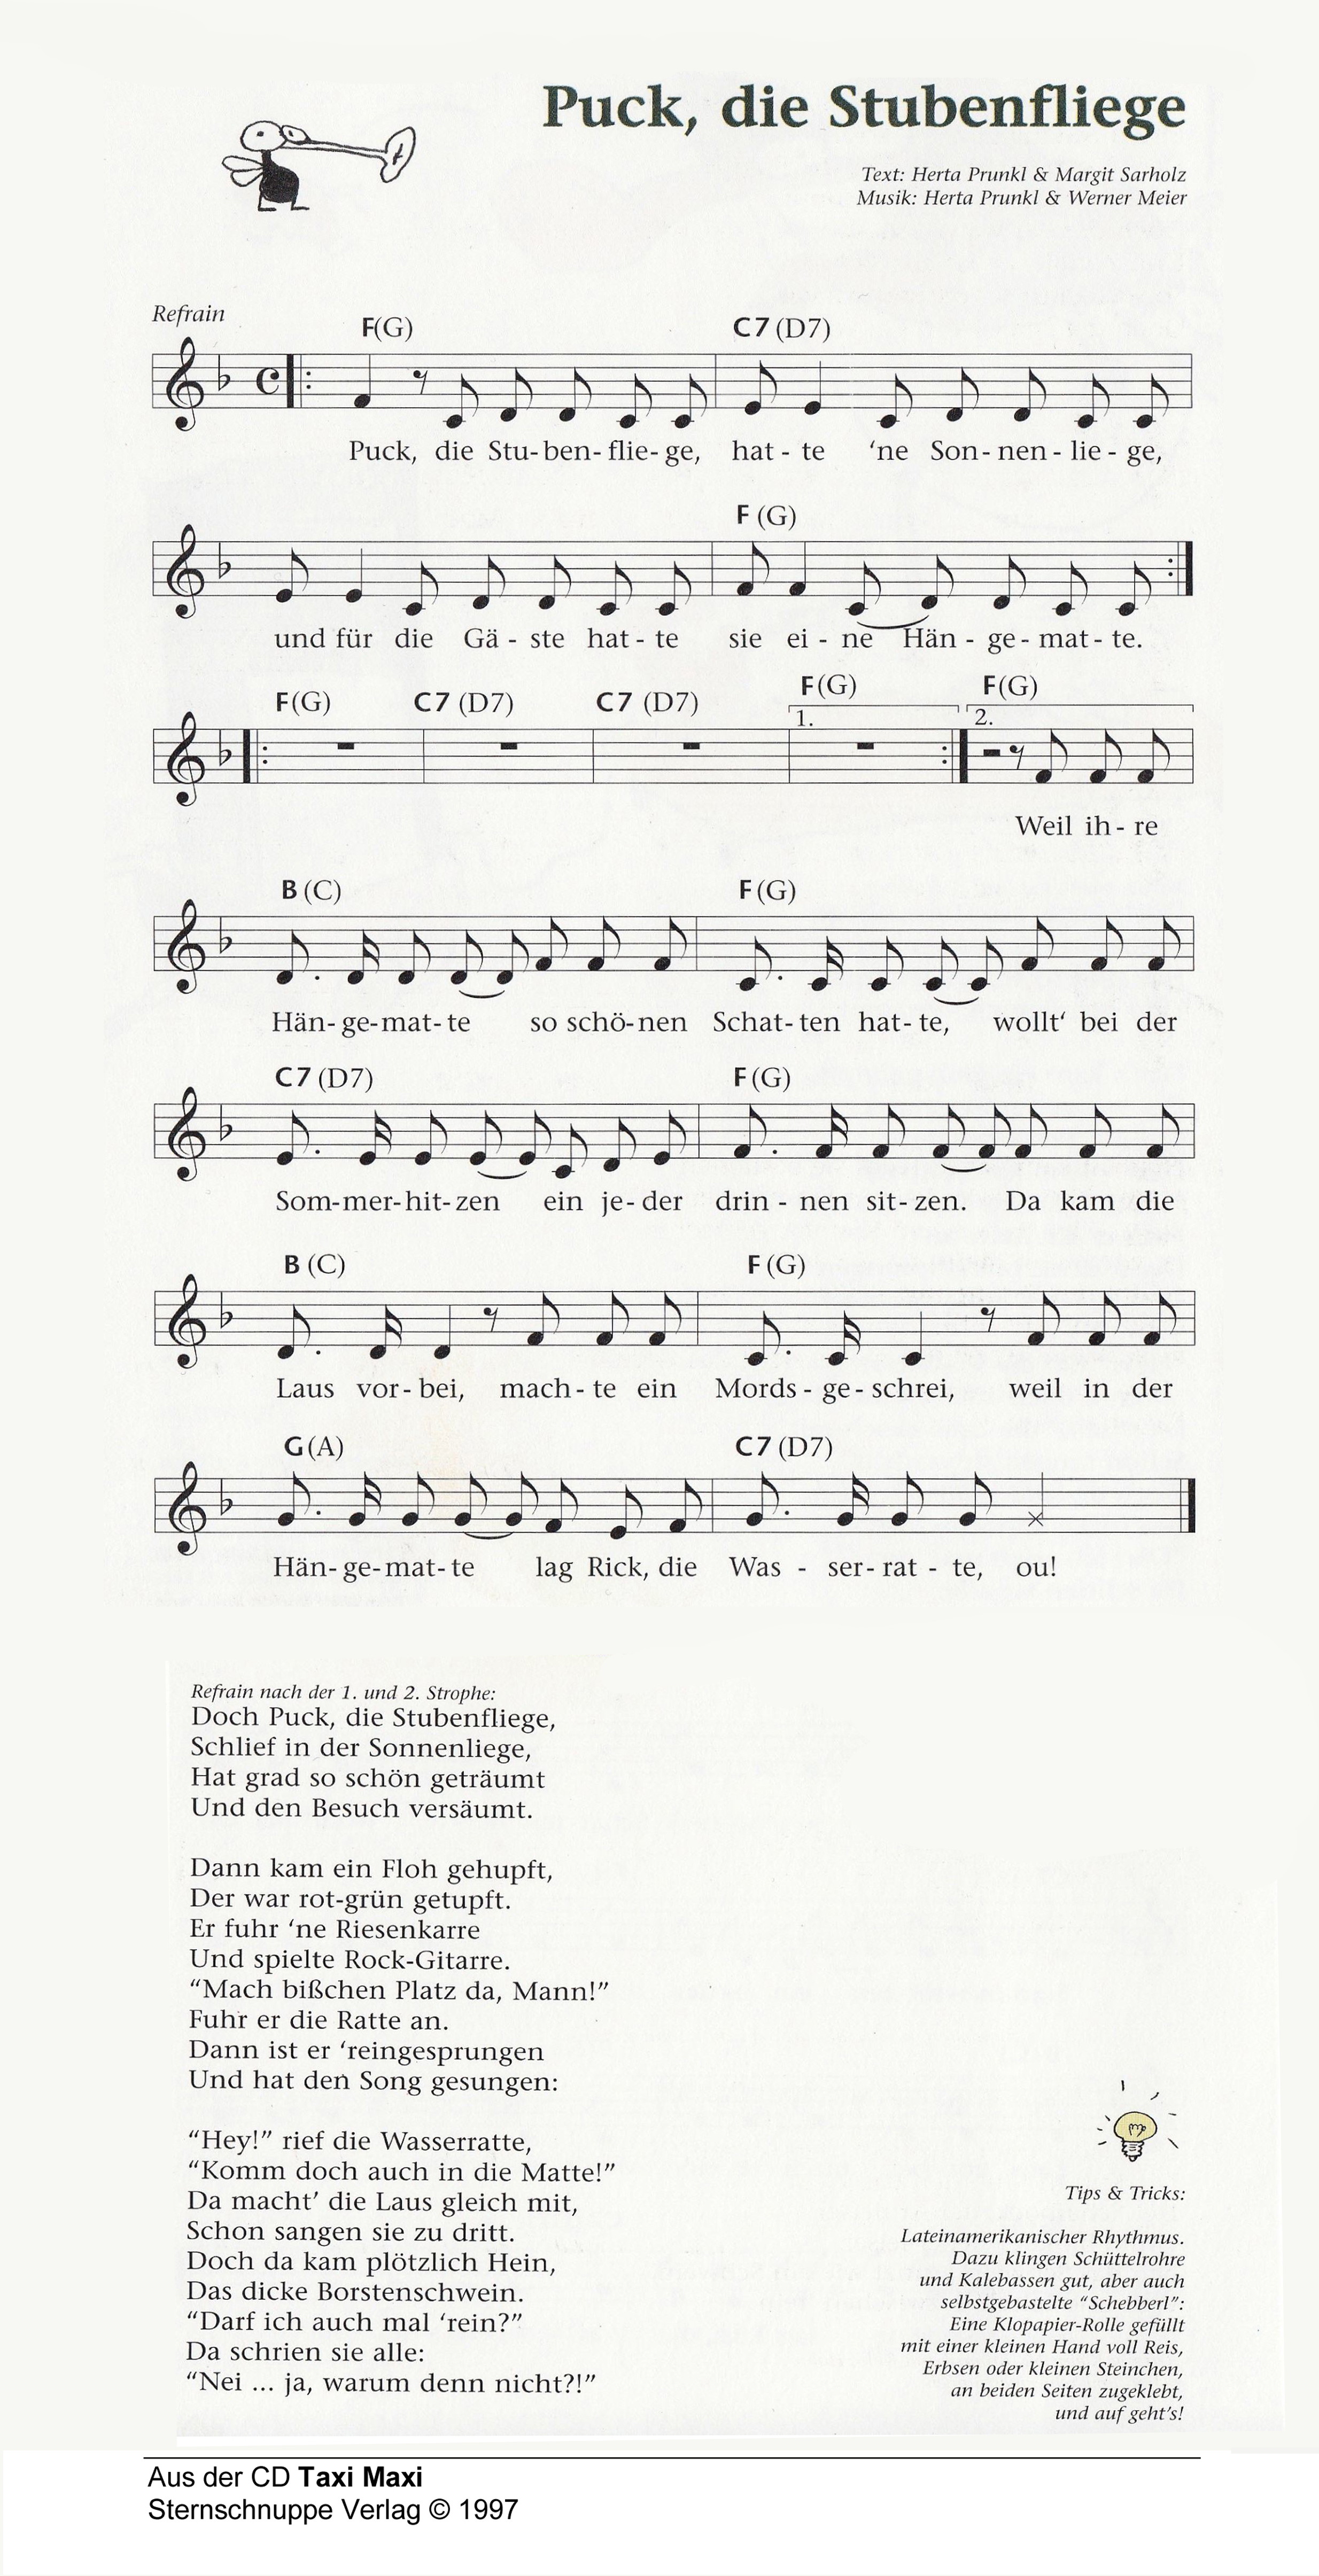 Liedtext, Akkorde und Noten vom Kinderlied Puck, die Stubenfliege